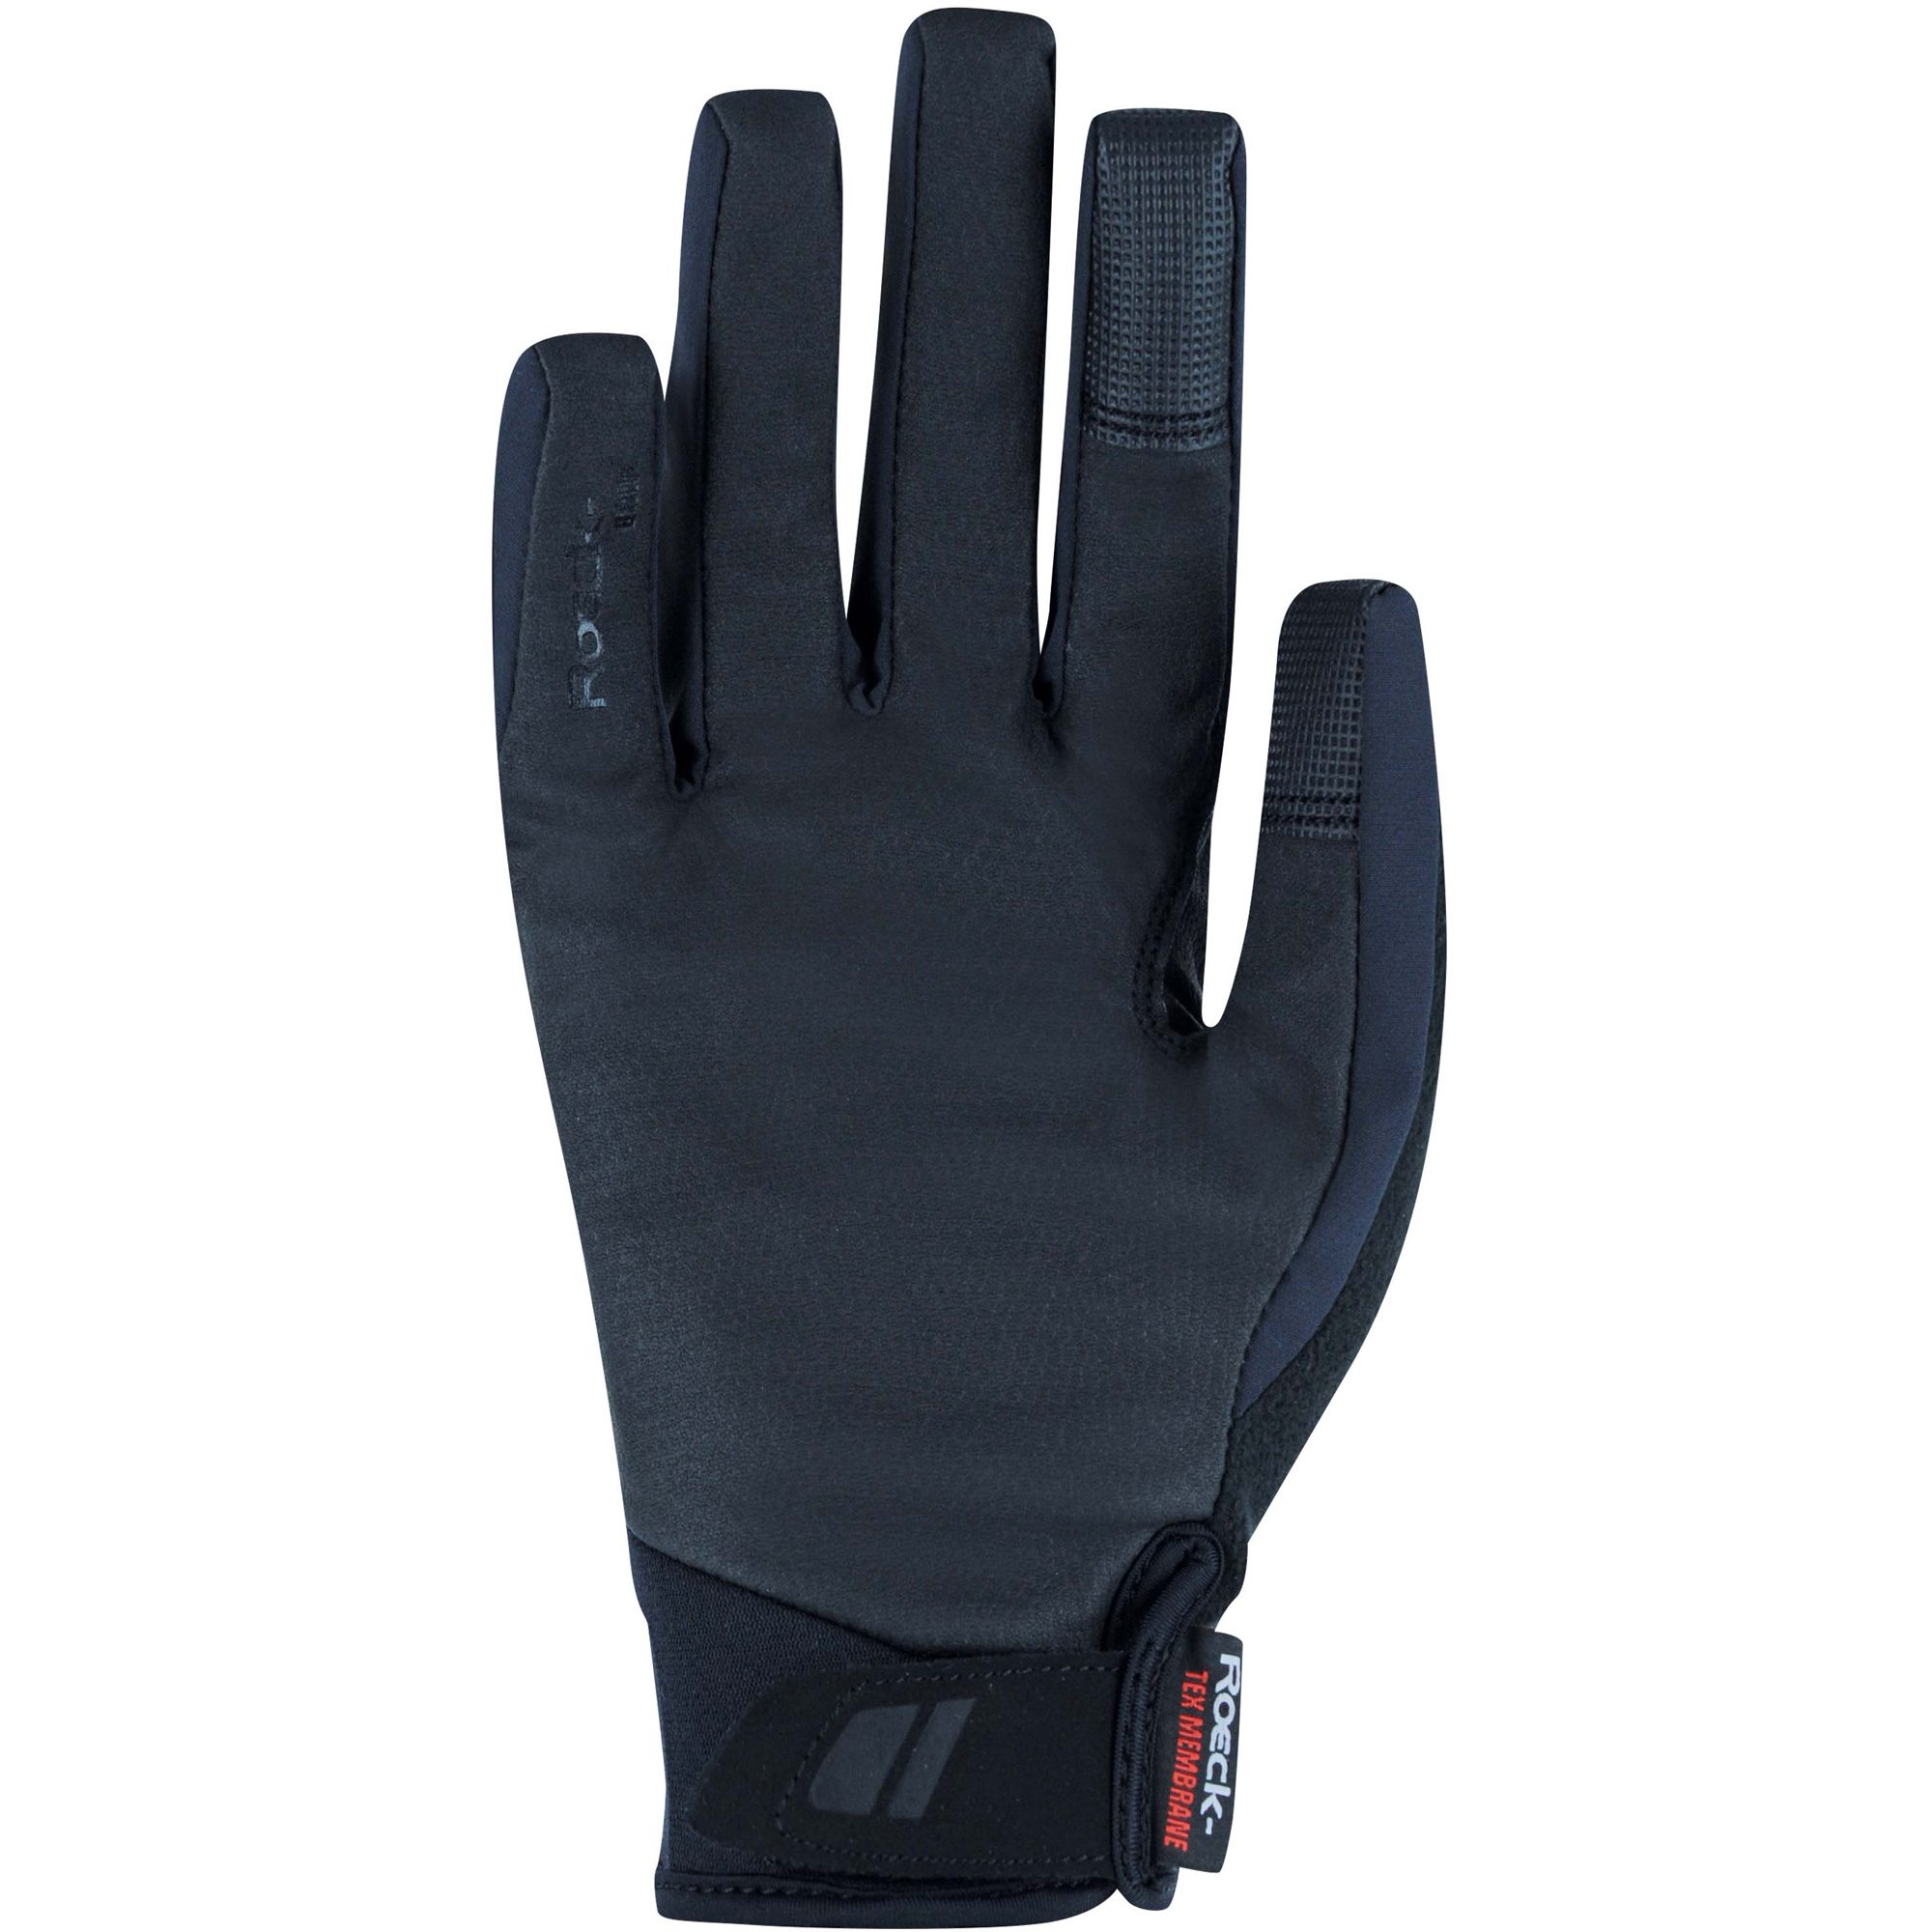 Roeckl Sports - Königsheim Handschuhe schwarz kaufen im Sport Bittl Shop